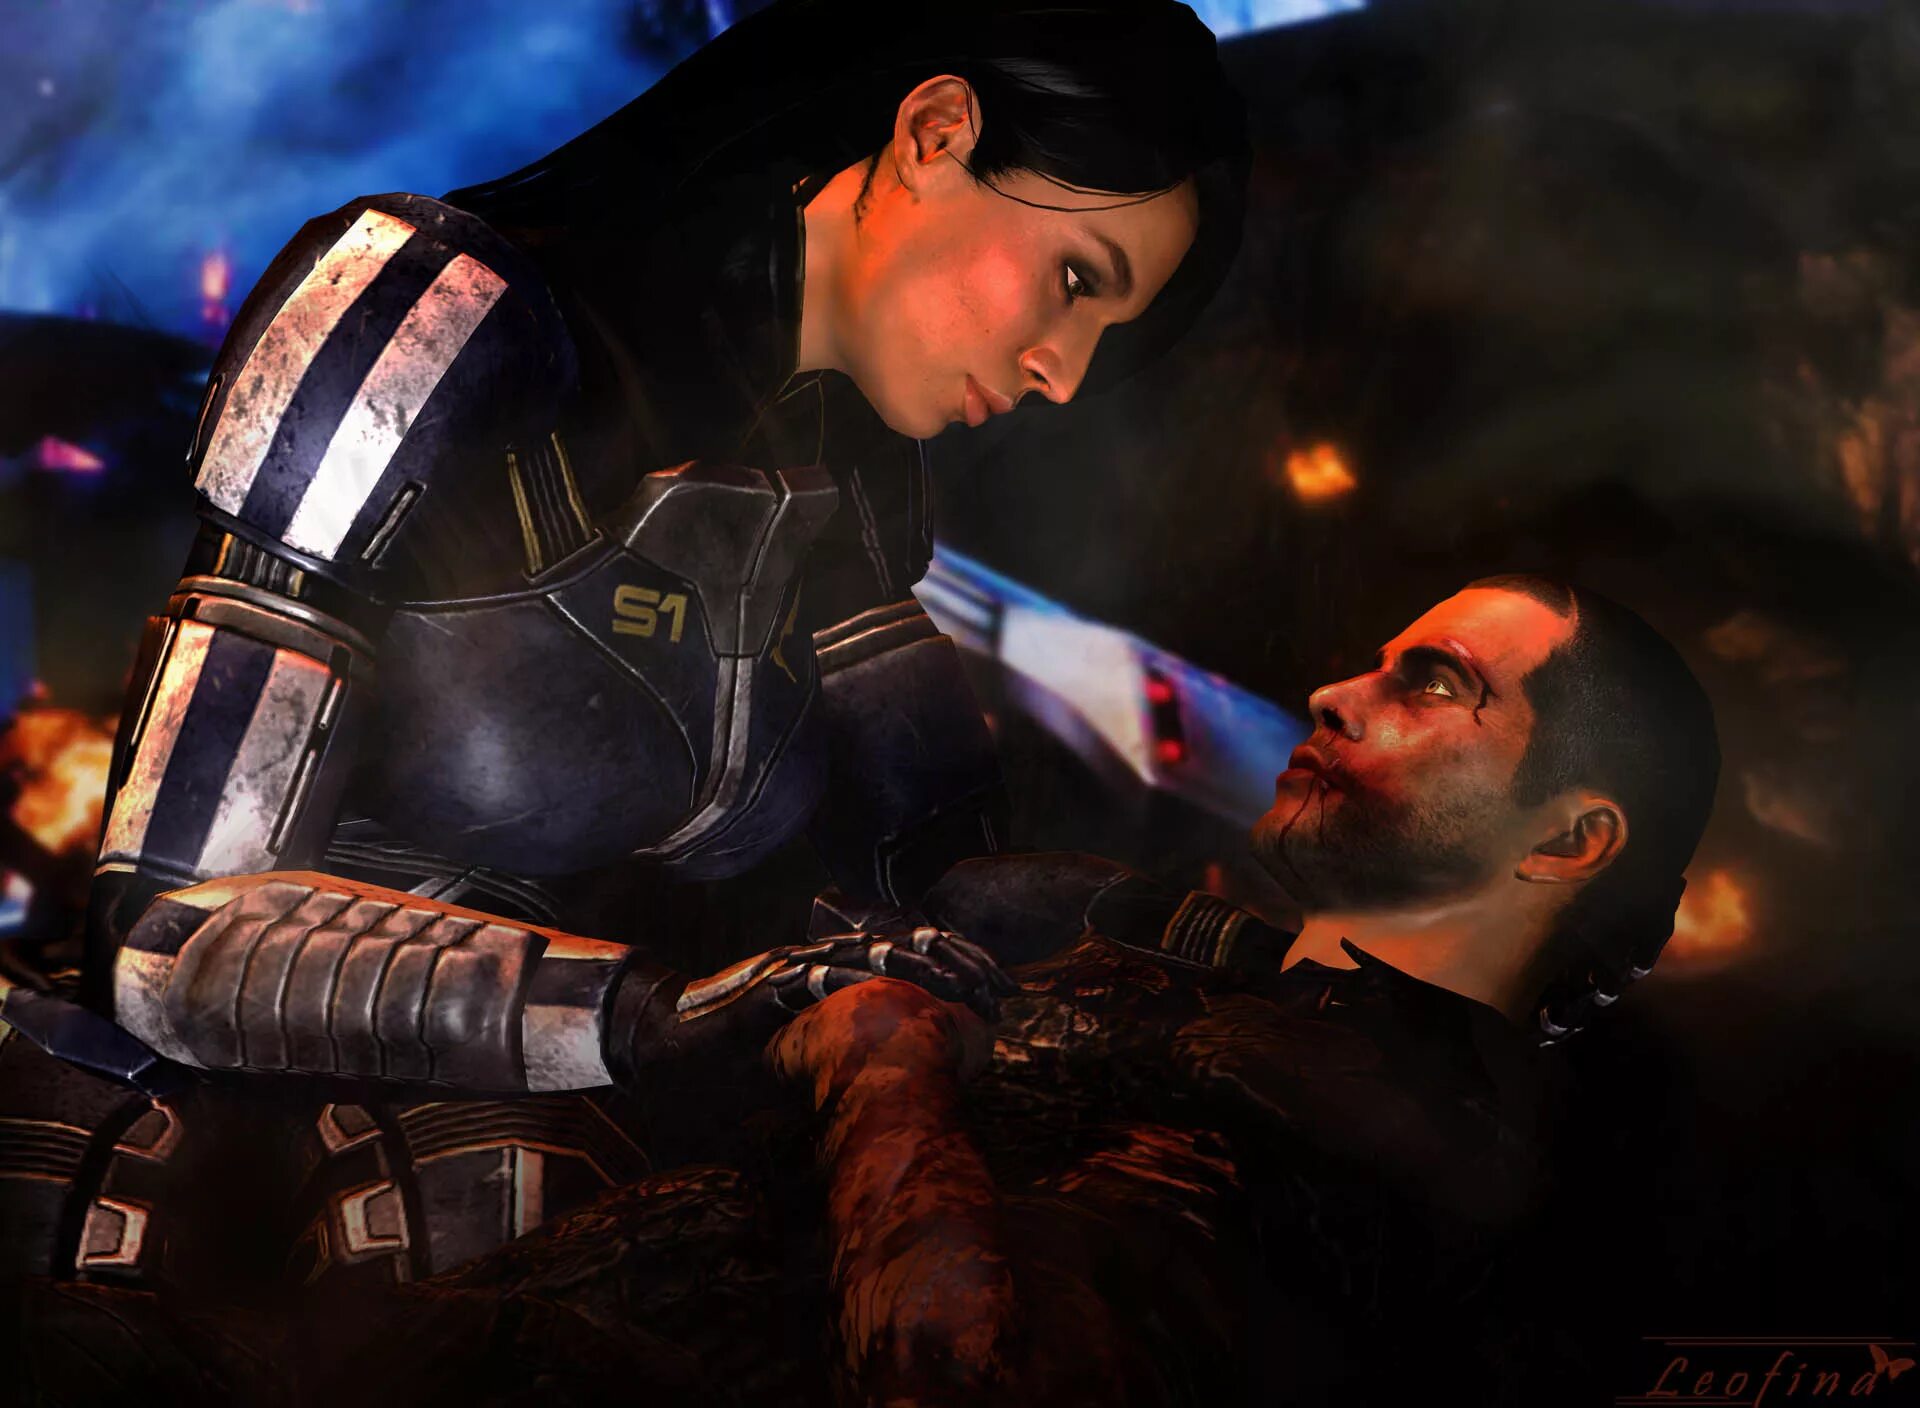 Капитан Шепард Mass Effect. Джон Шепард Mass Effect. Джон Шепард и Эшли. Шепард и Эшли масс эффект 1. Fan effect